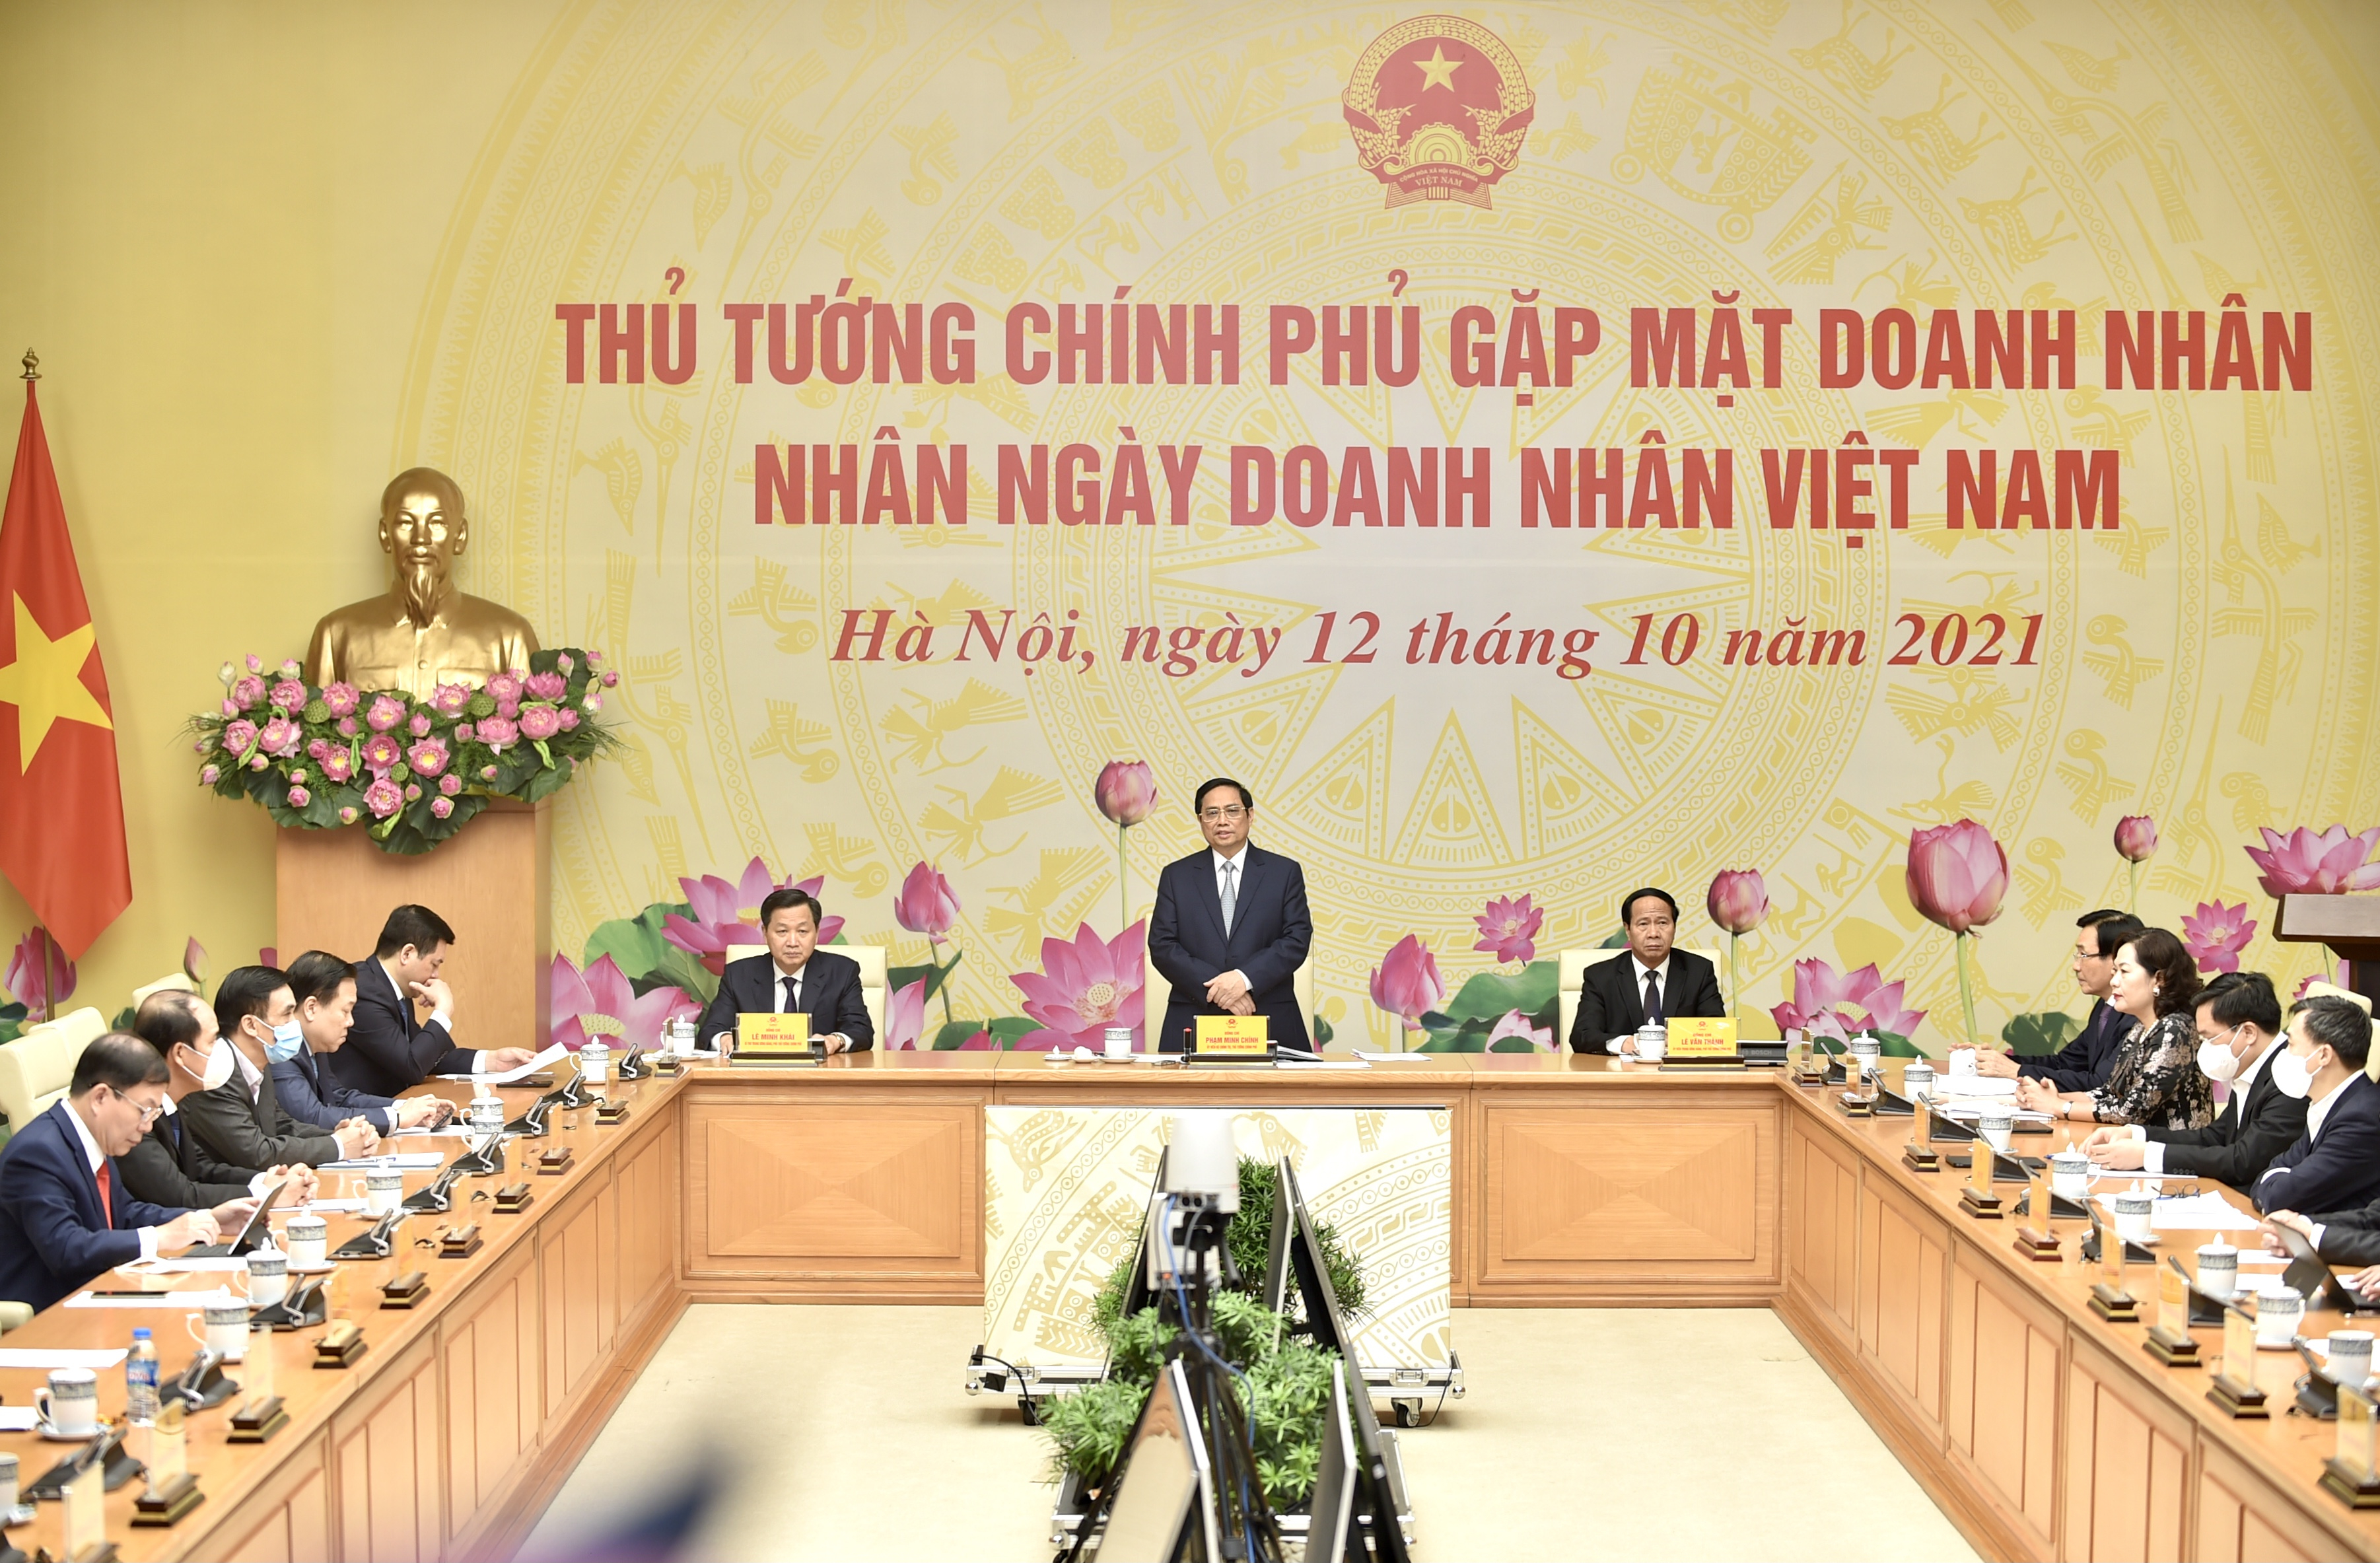 Thủ tướng Phạm Minh Chính gặp mặt doanh nhân nhân Ngày Doanh nhân Việt Nam. Ảnh: VGP.